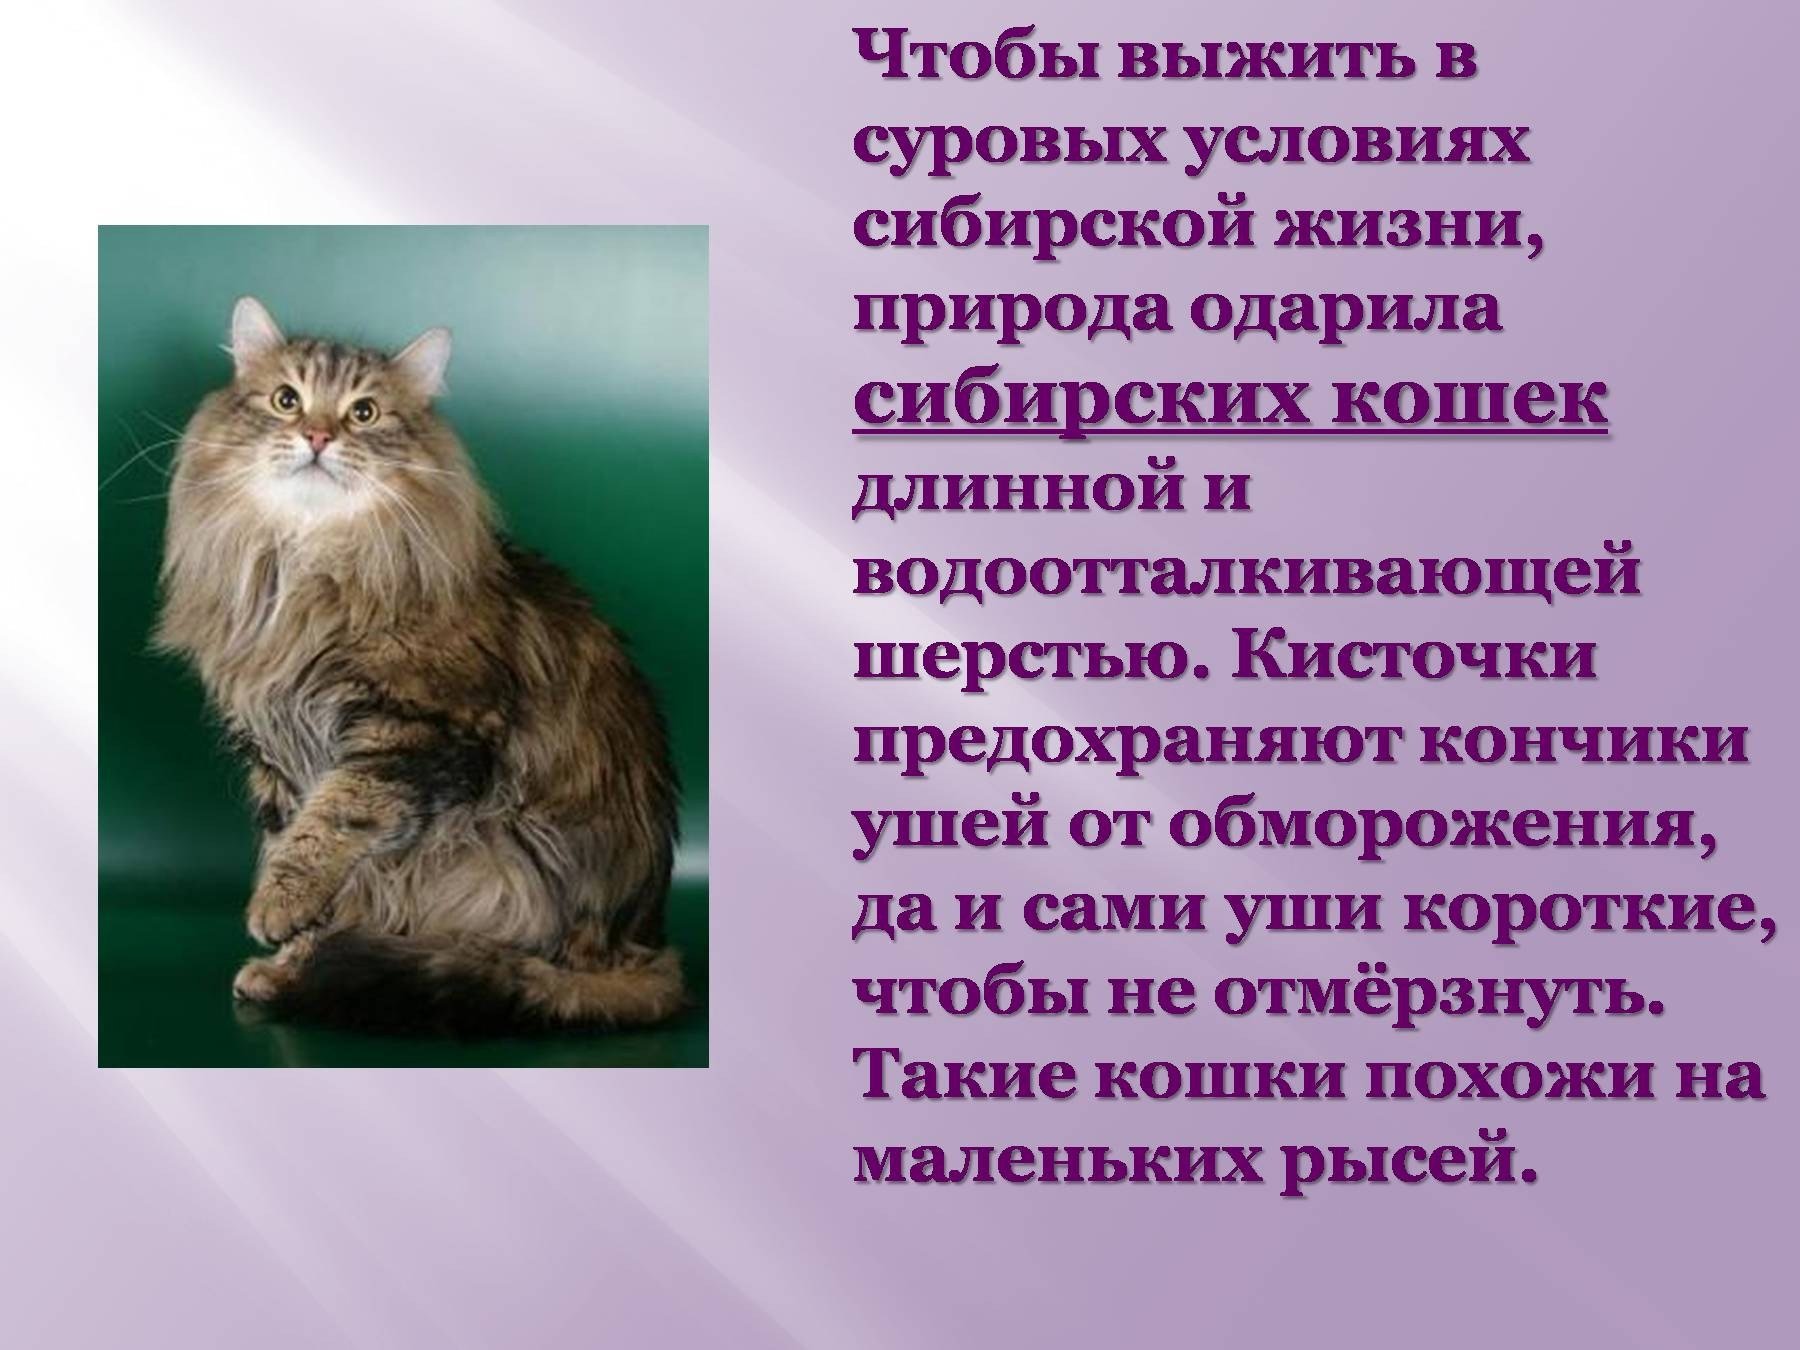 Доклад про кошек. Рассказ о сибирской кошке. Проект про кошек домашних. Презентация на тему кошки. Почему кошка любимое животное